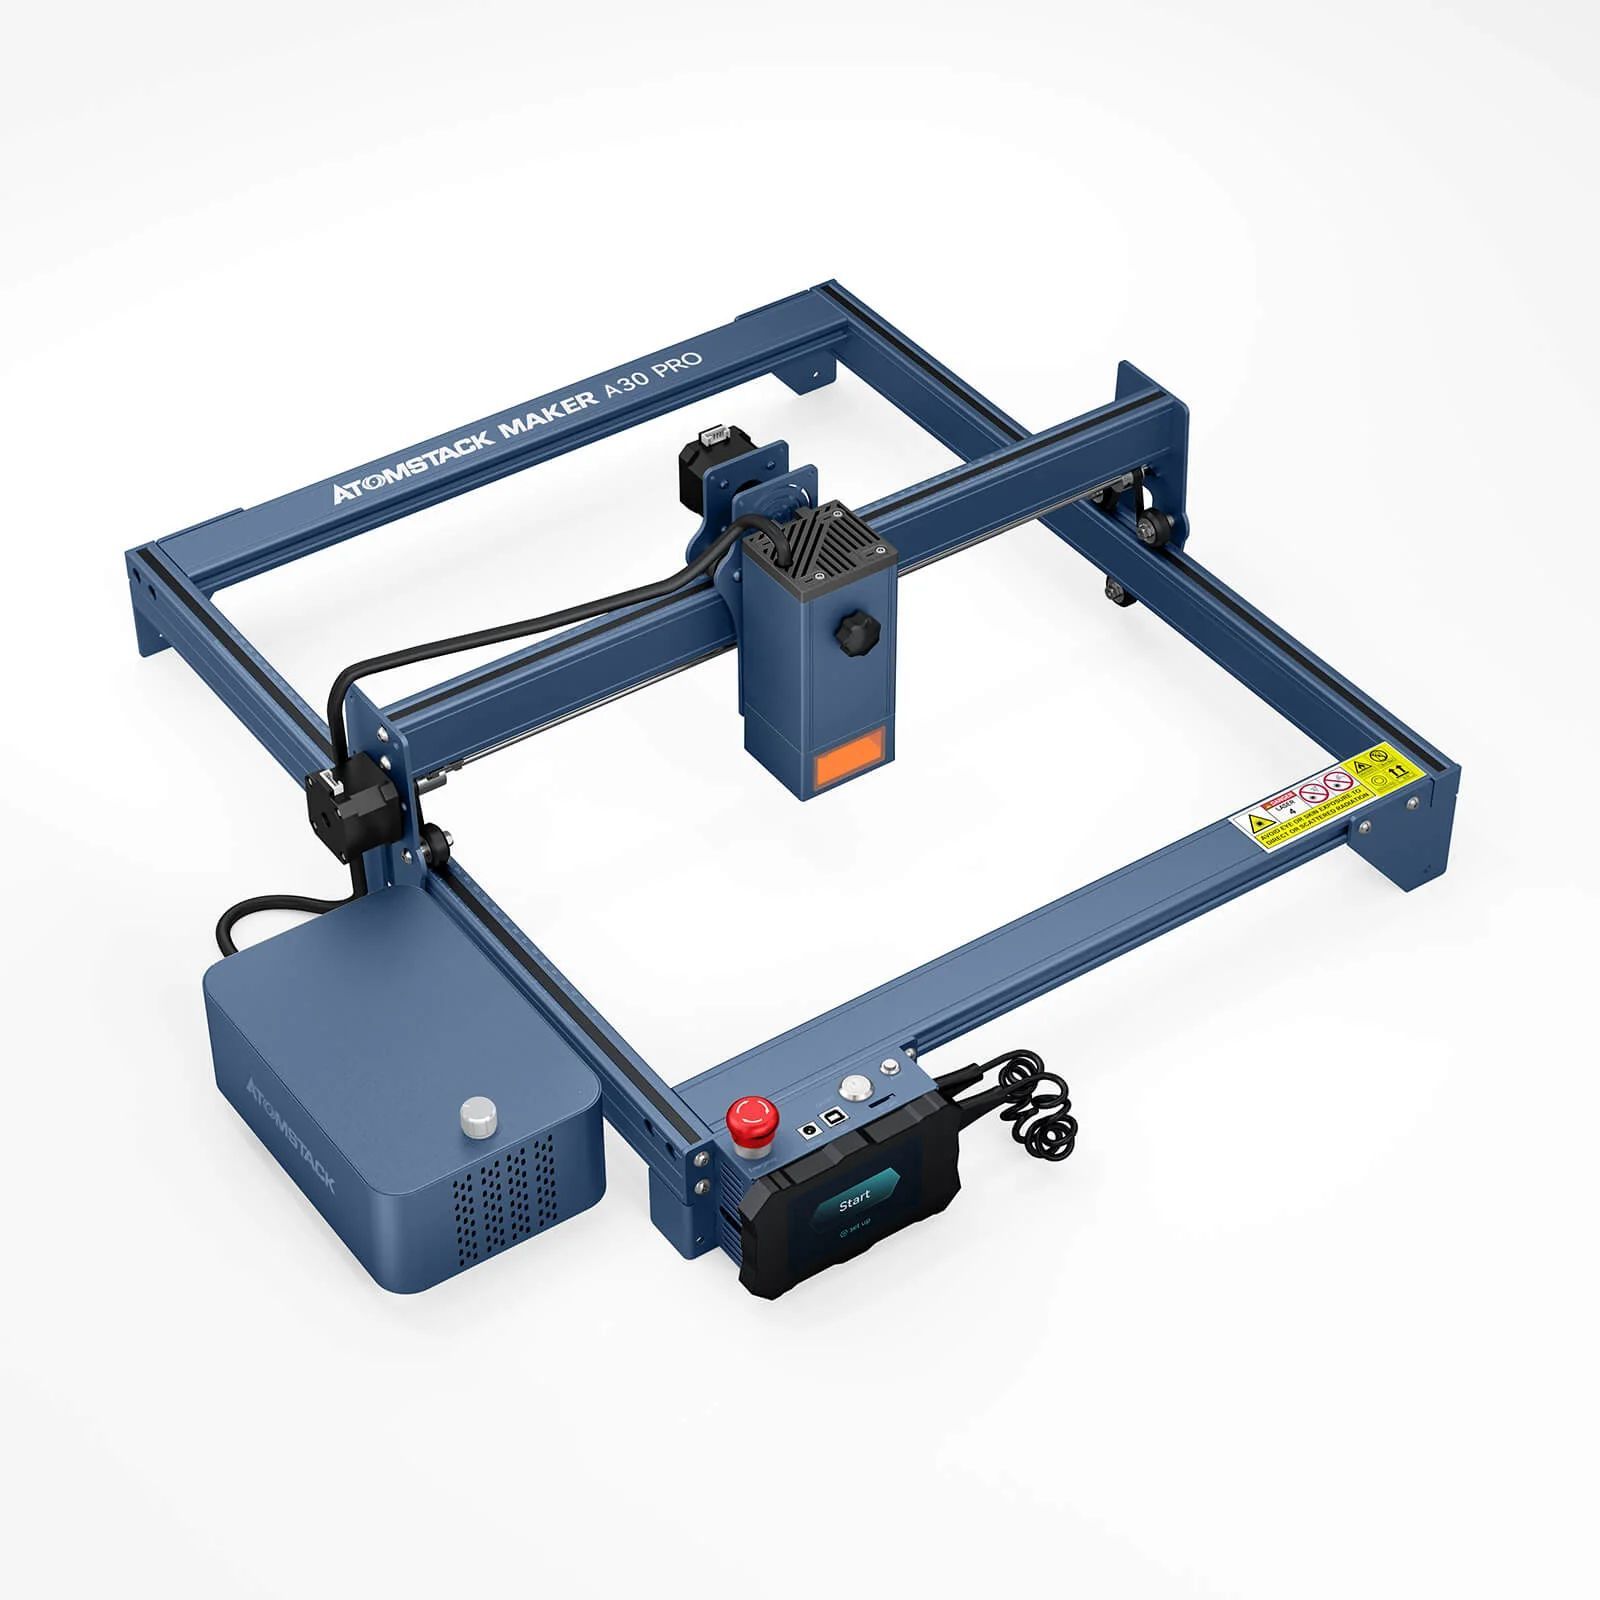 Atoms tack a30 pro 160w laser engraving cutting machine